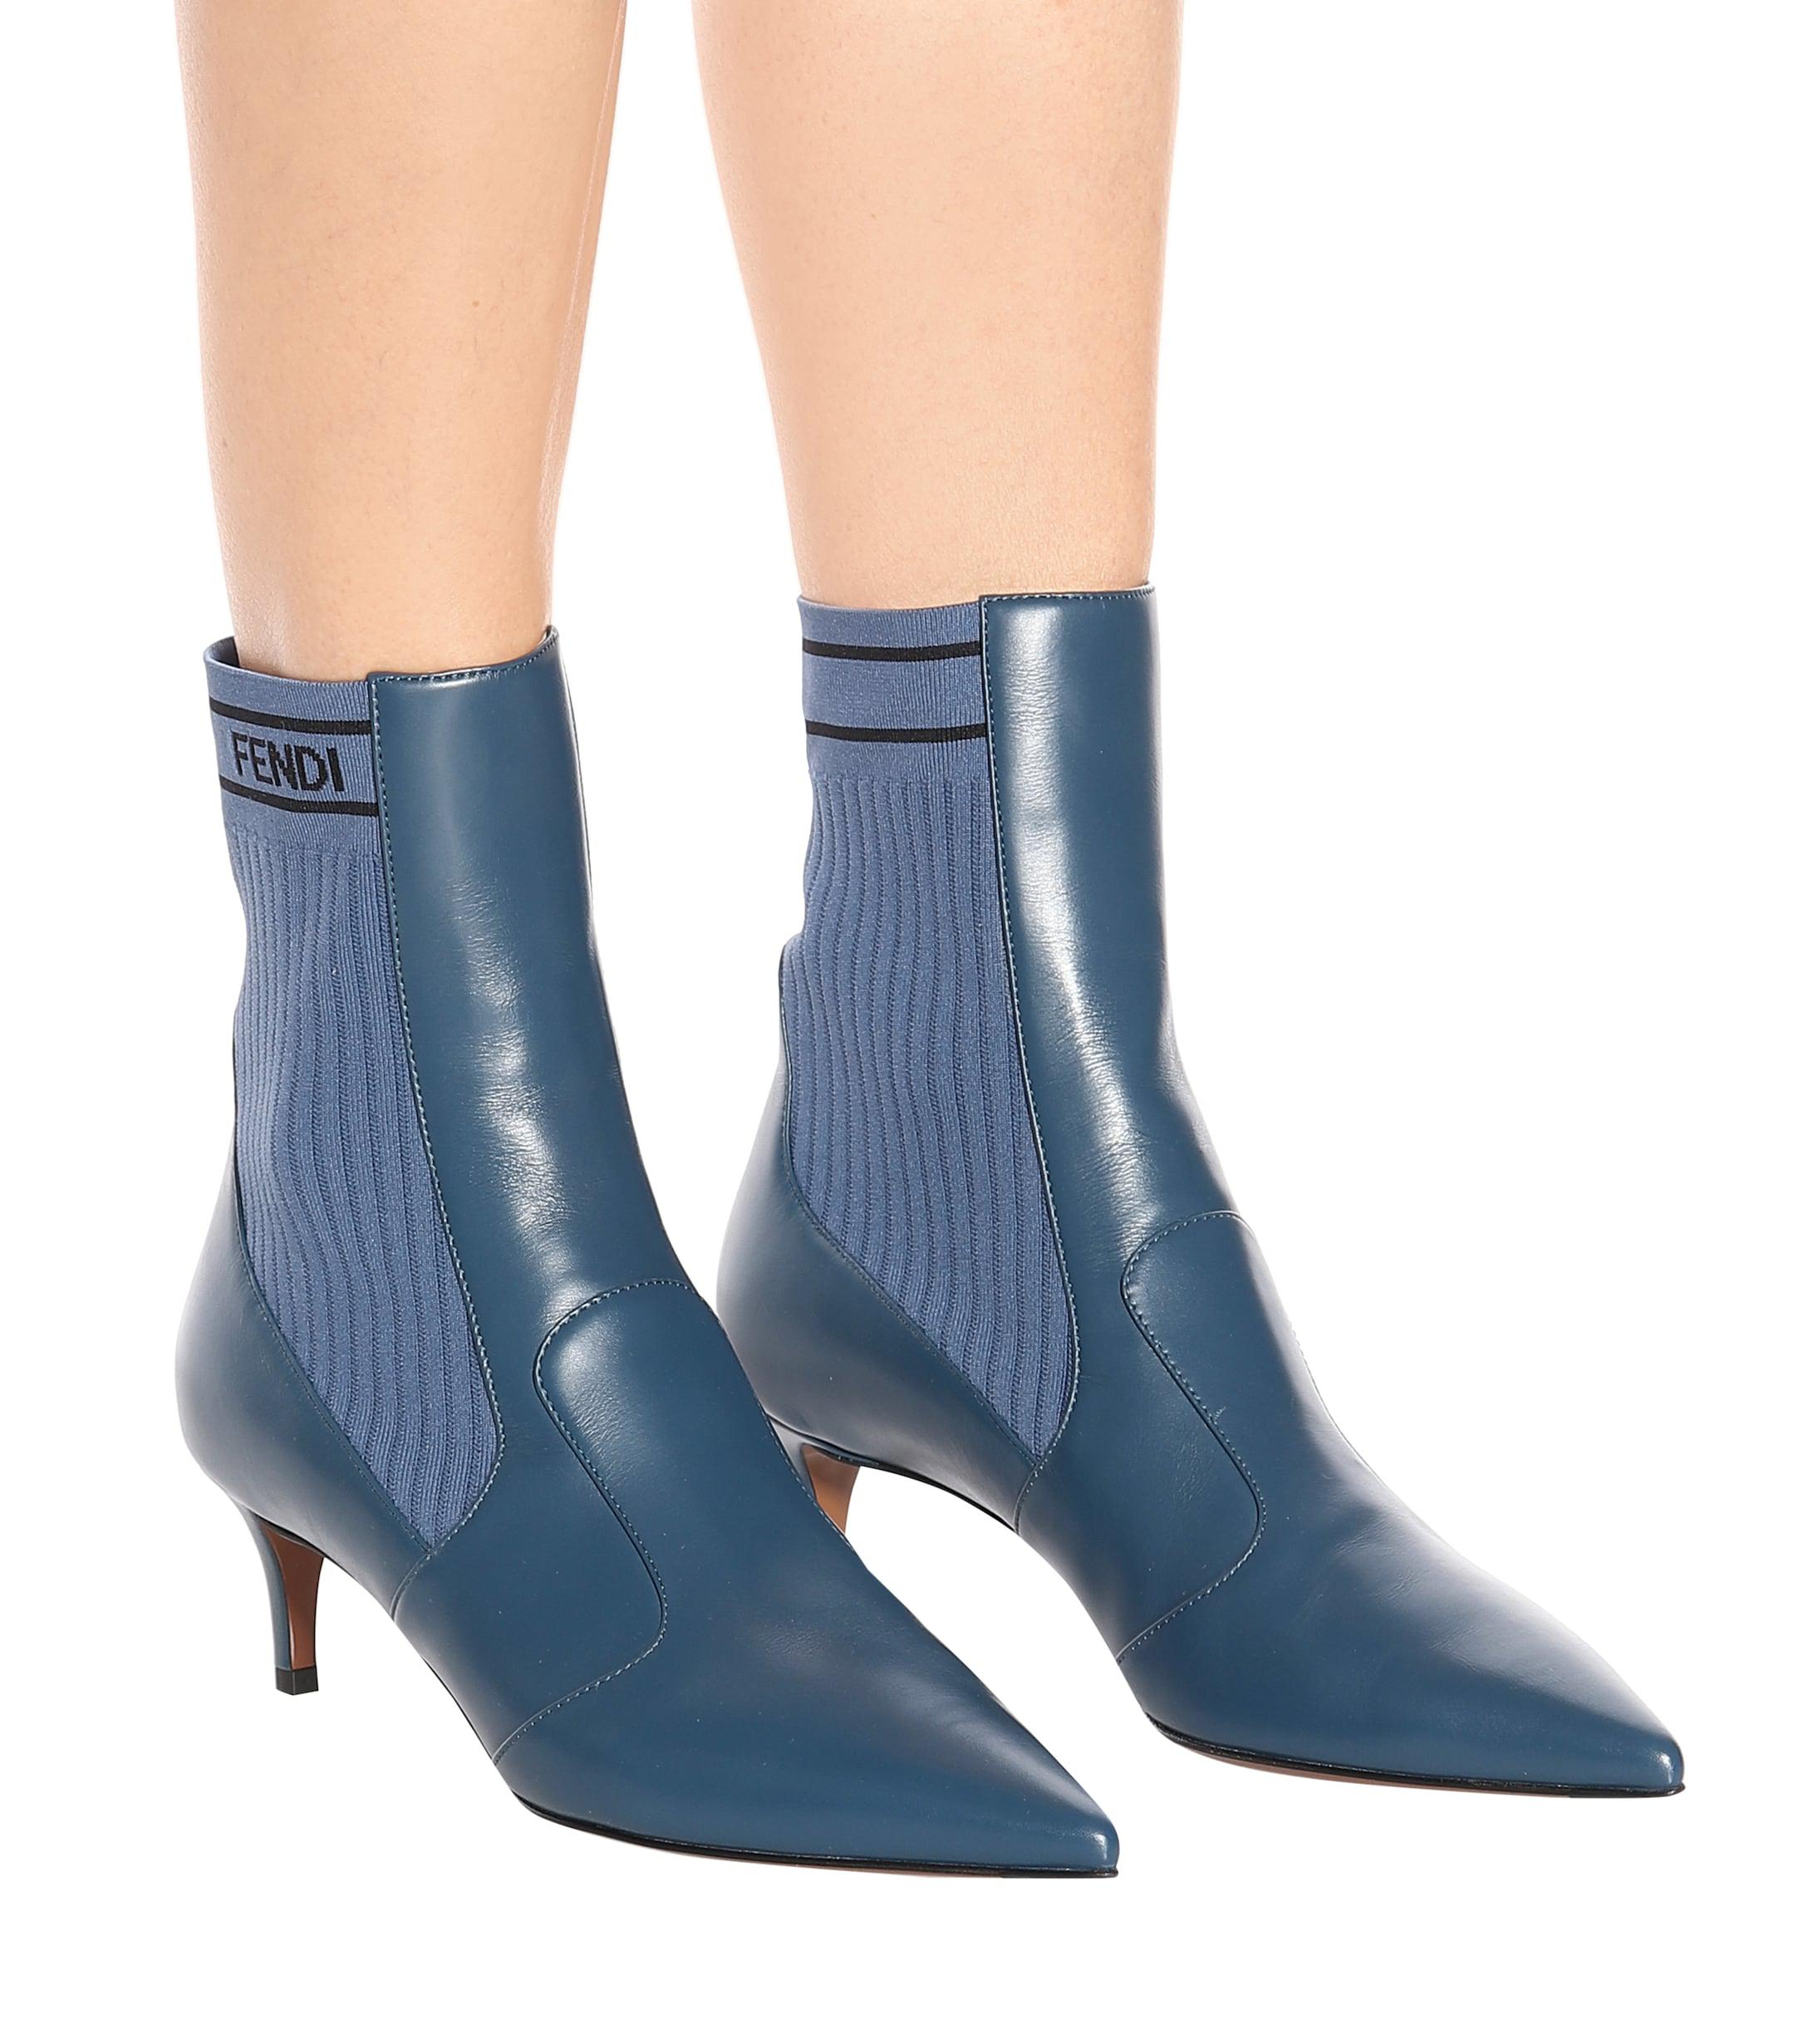 blue fendi boots